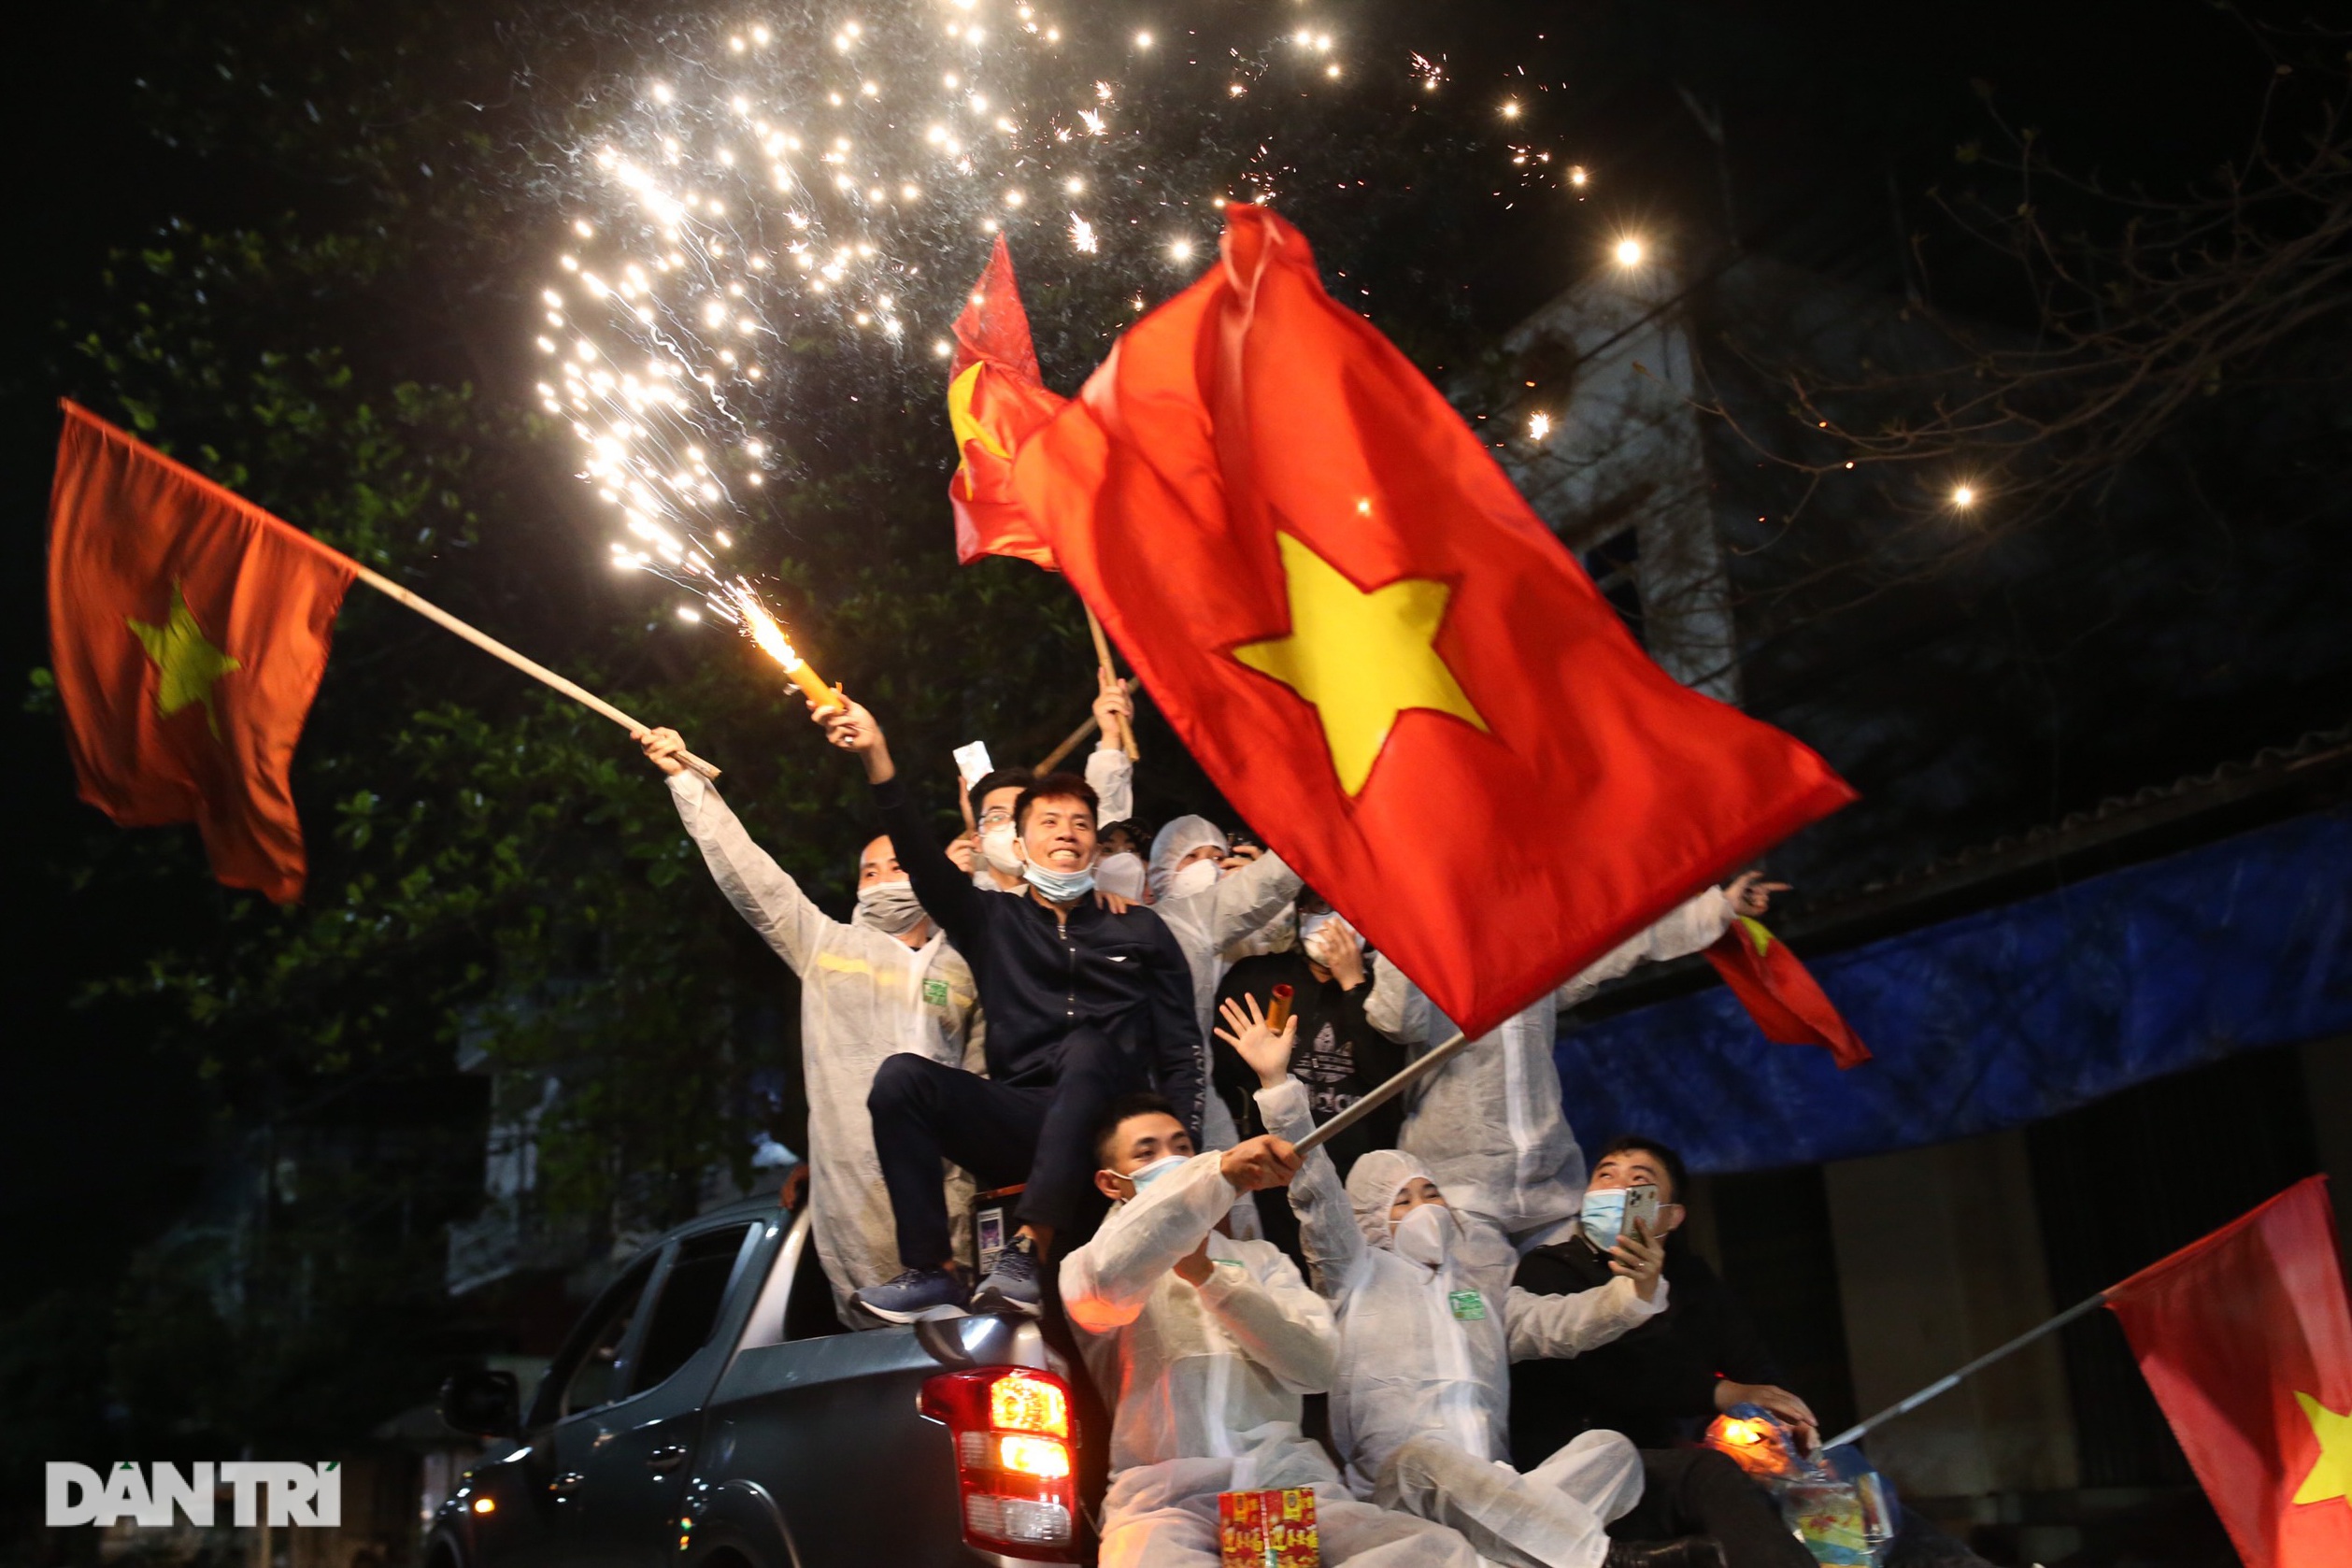 Pháo hoa rực rỡ, người dân vỡ òa cảm xúc khi TP Chí Linh được gỡ phong tỏa - 18